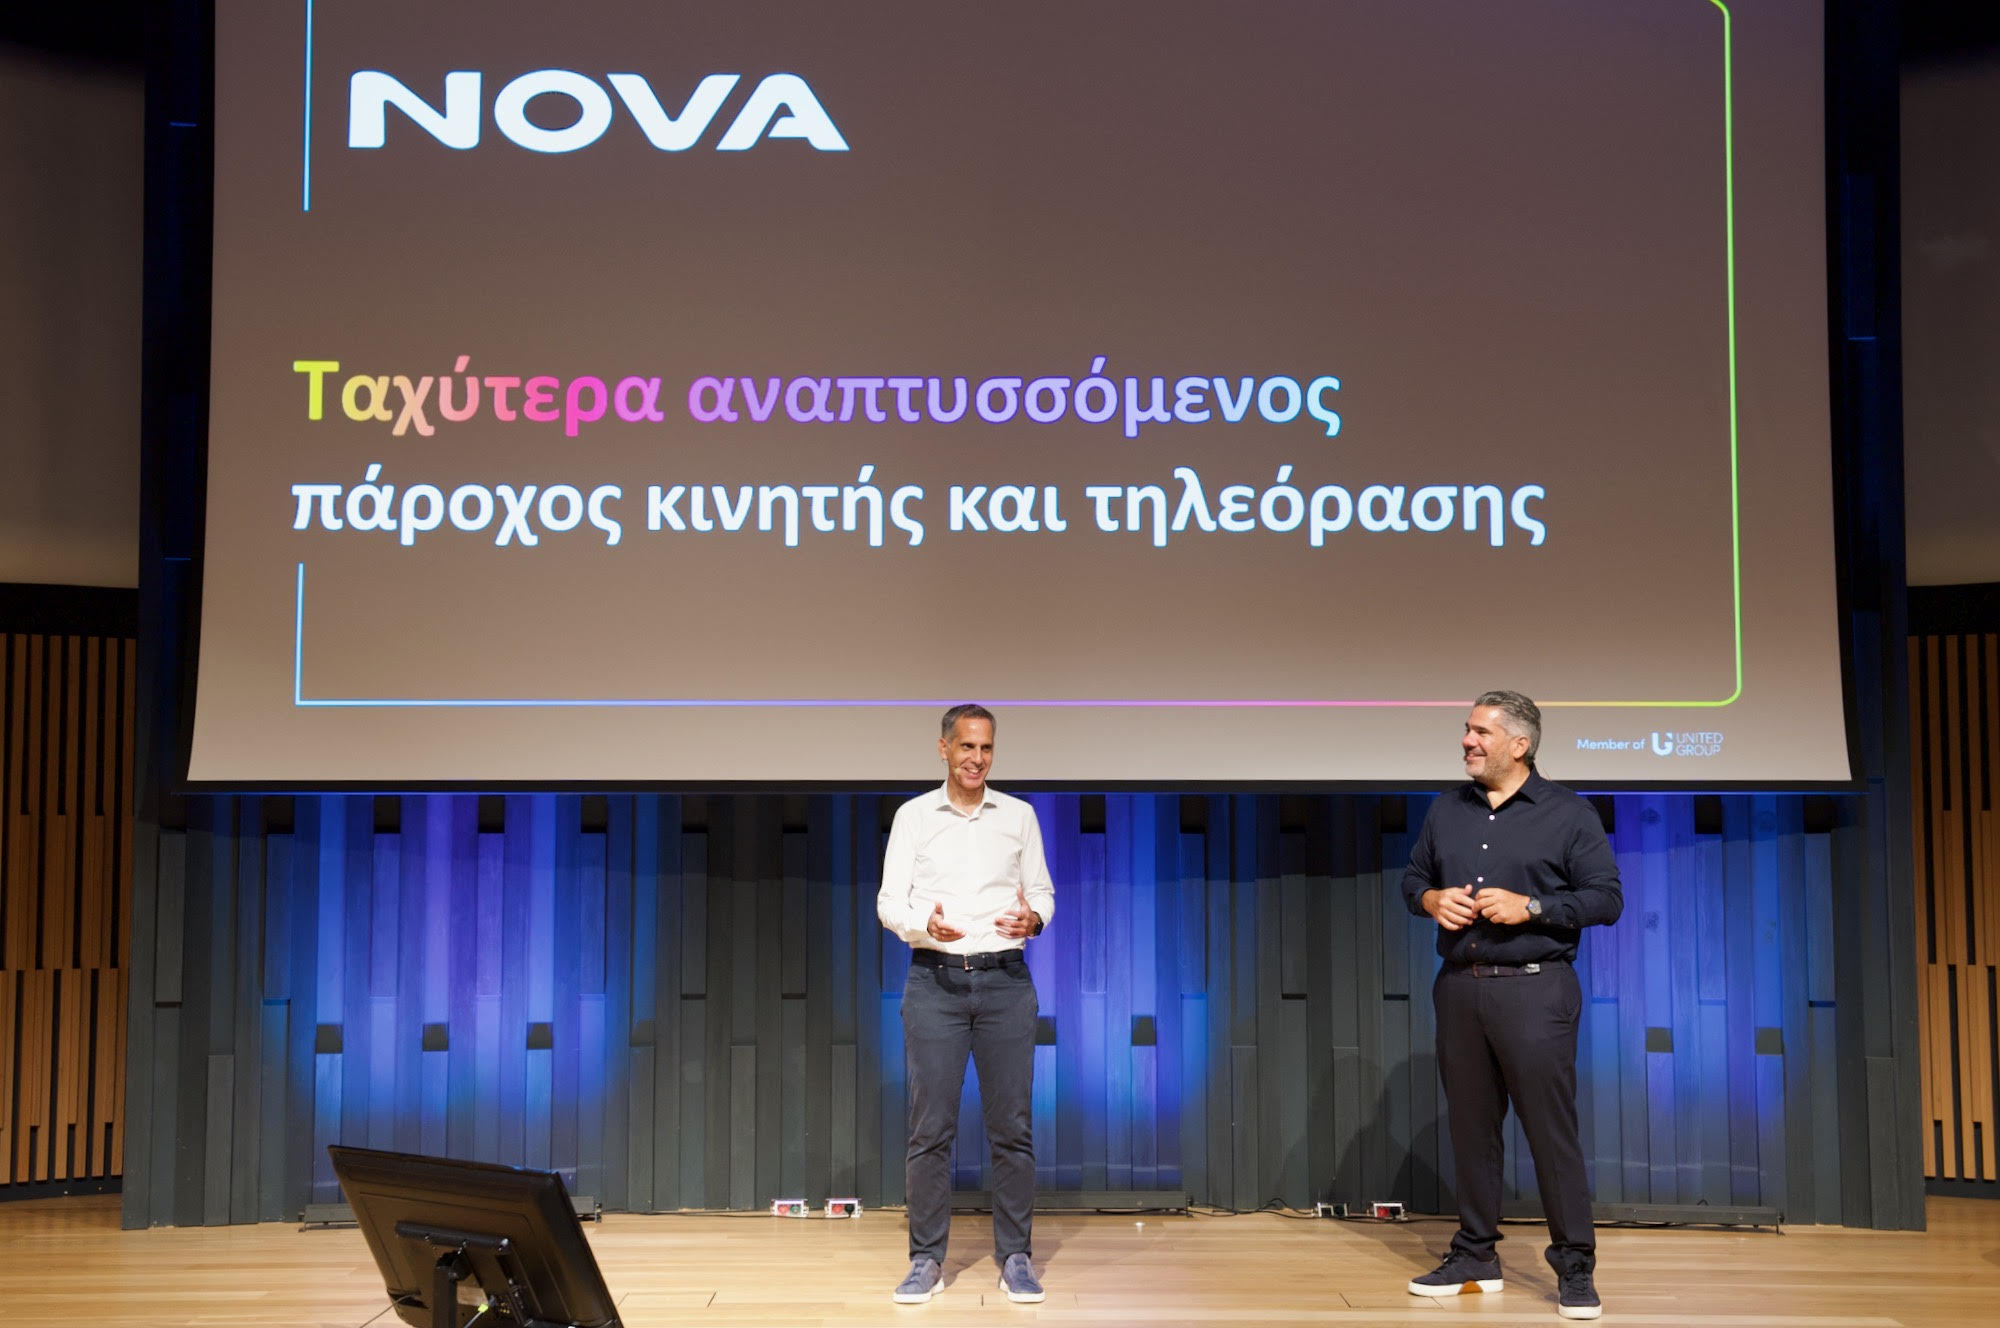 Nova: “Είμαστε ο ταχύτερα αναπτυσσόμενος πάροχος κινητής και συνδρομητικής τηλεόρασης το πρώτο εξάμηνο του 2023”